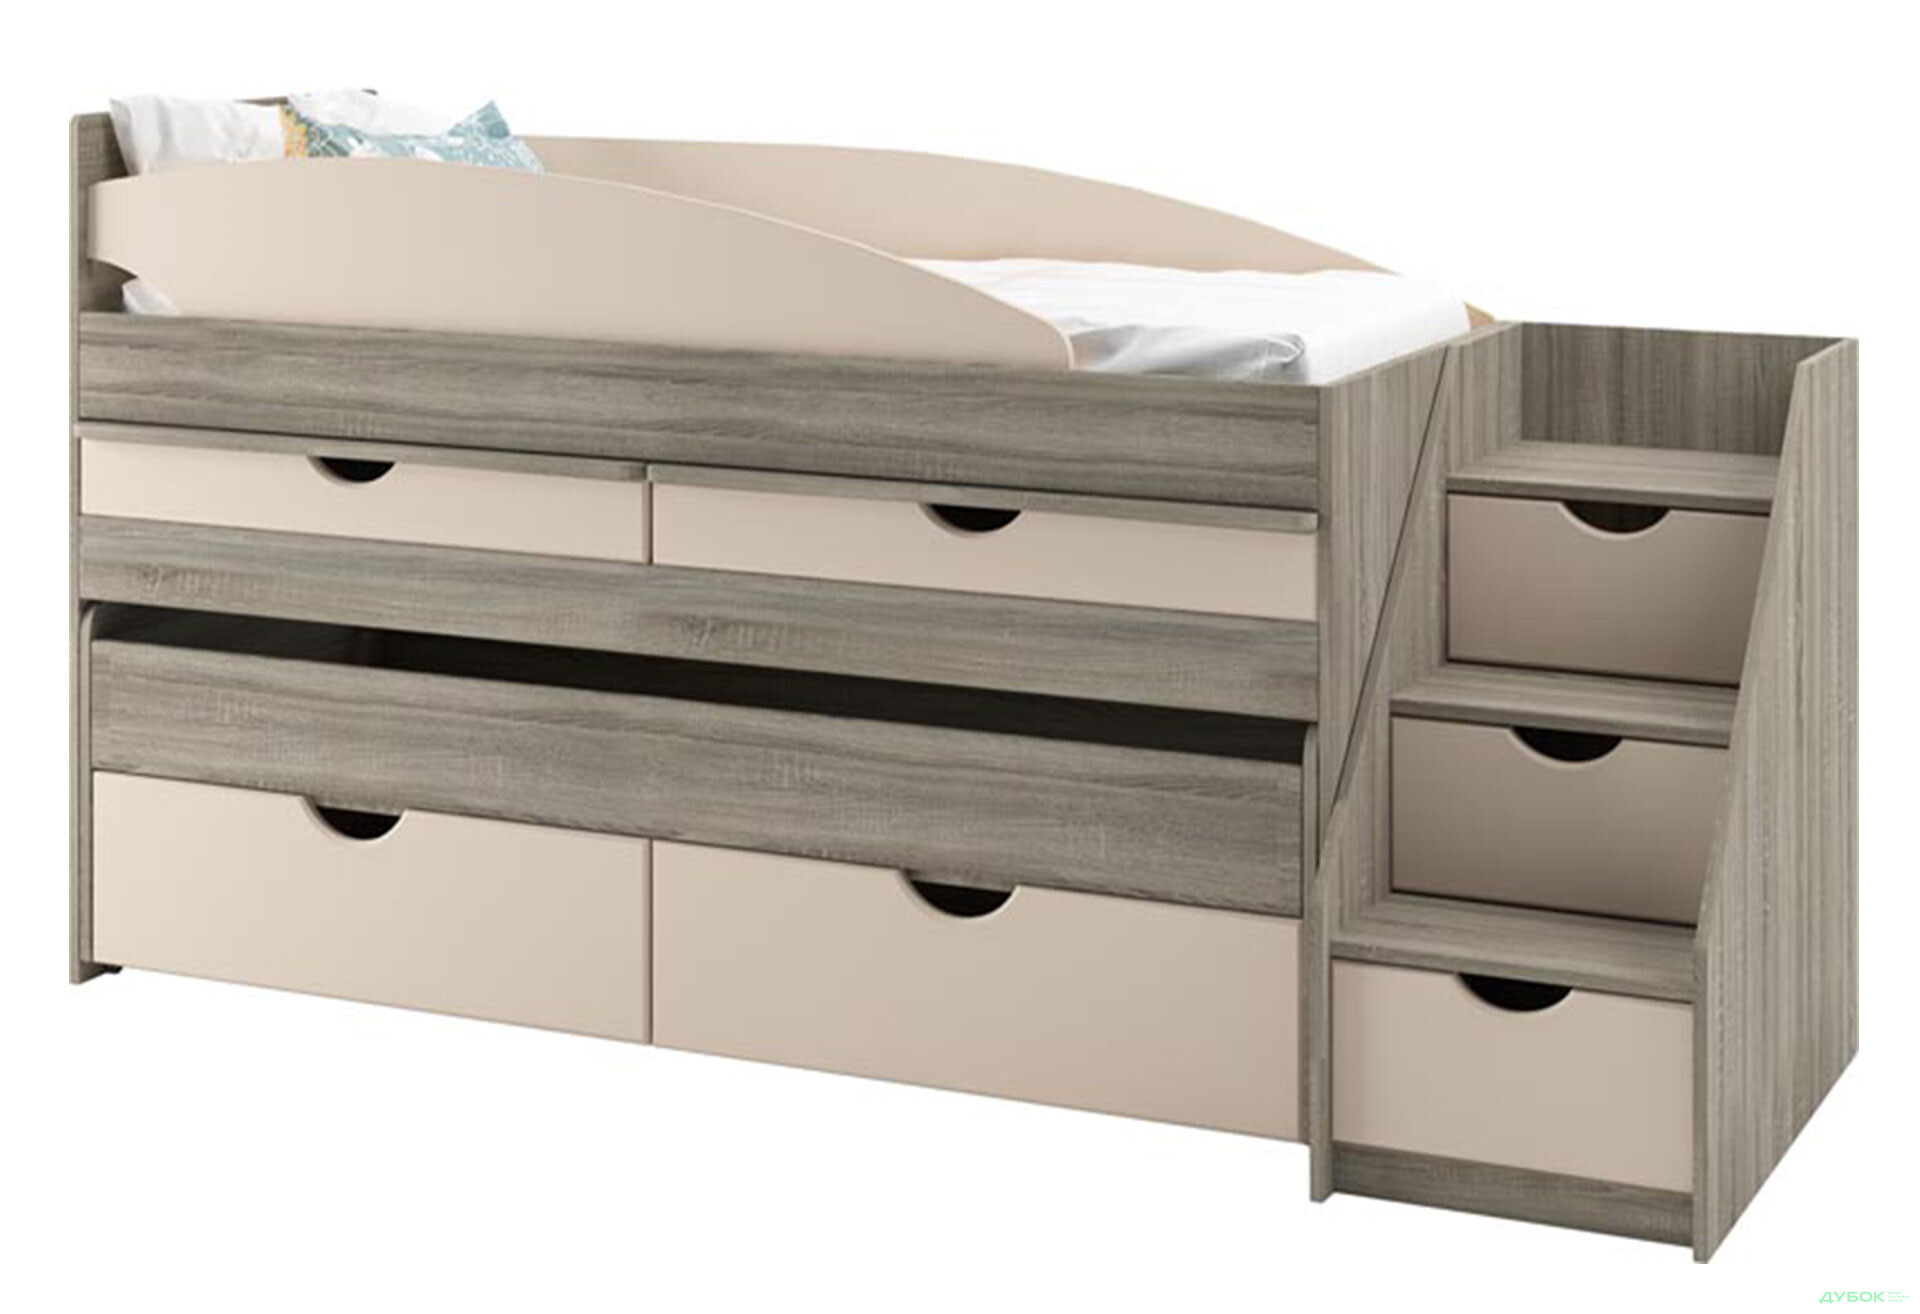 Фото 1 - Кровать двухъярусная Svit Mebliv Саванна New 80х190 см с ящиками, лесенкой и выдвижными столешницами